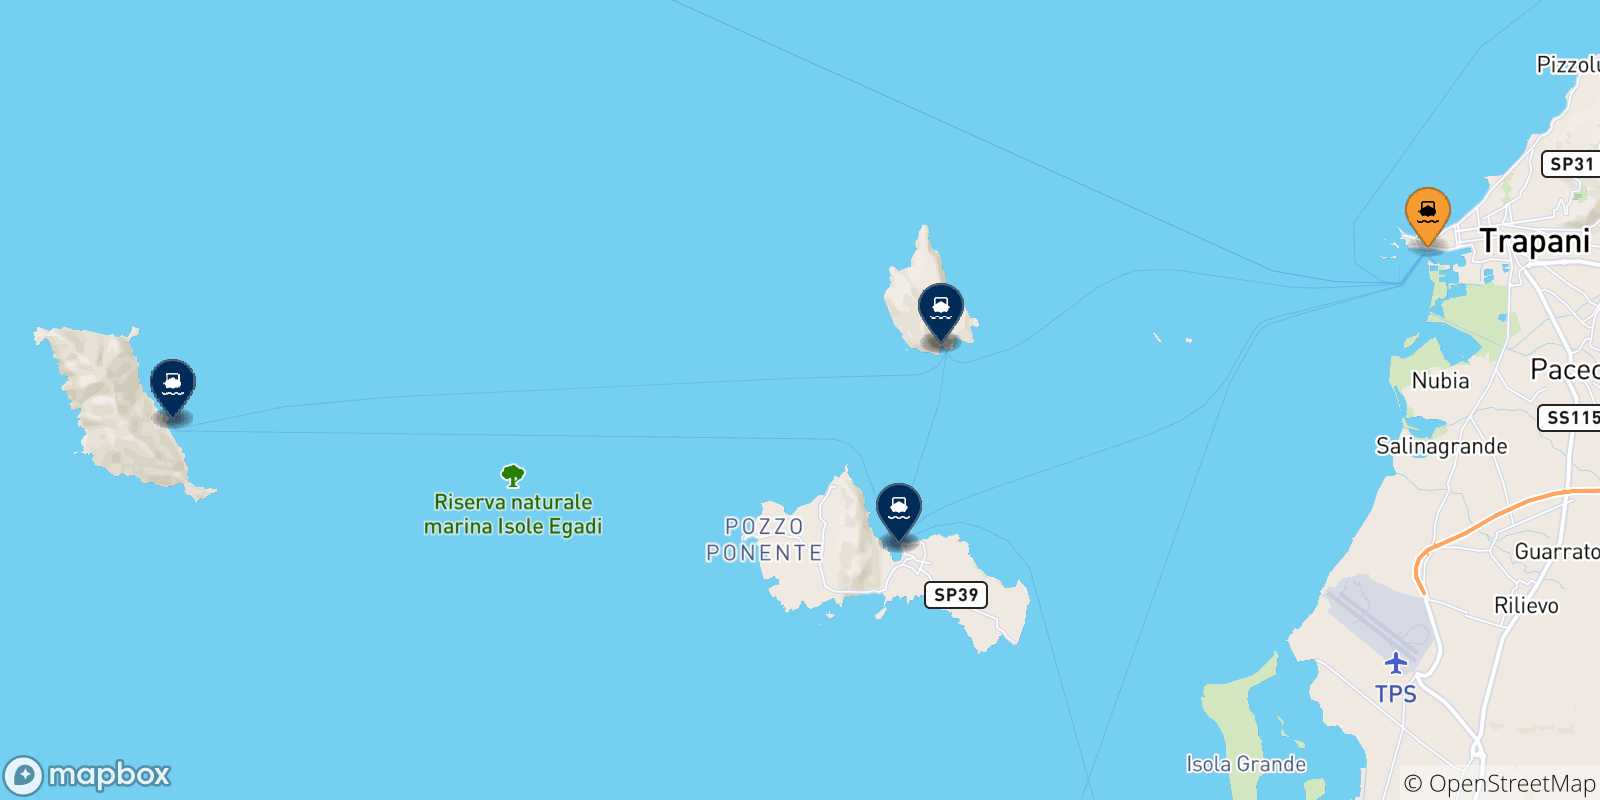 Mappa dei porti collegati con le Isole Egadi